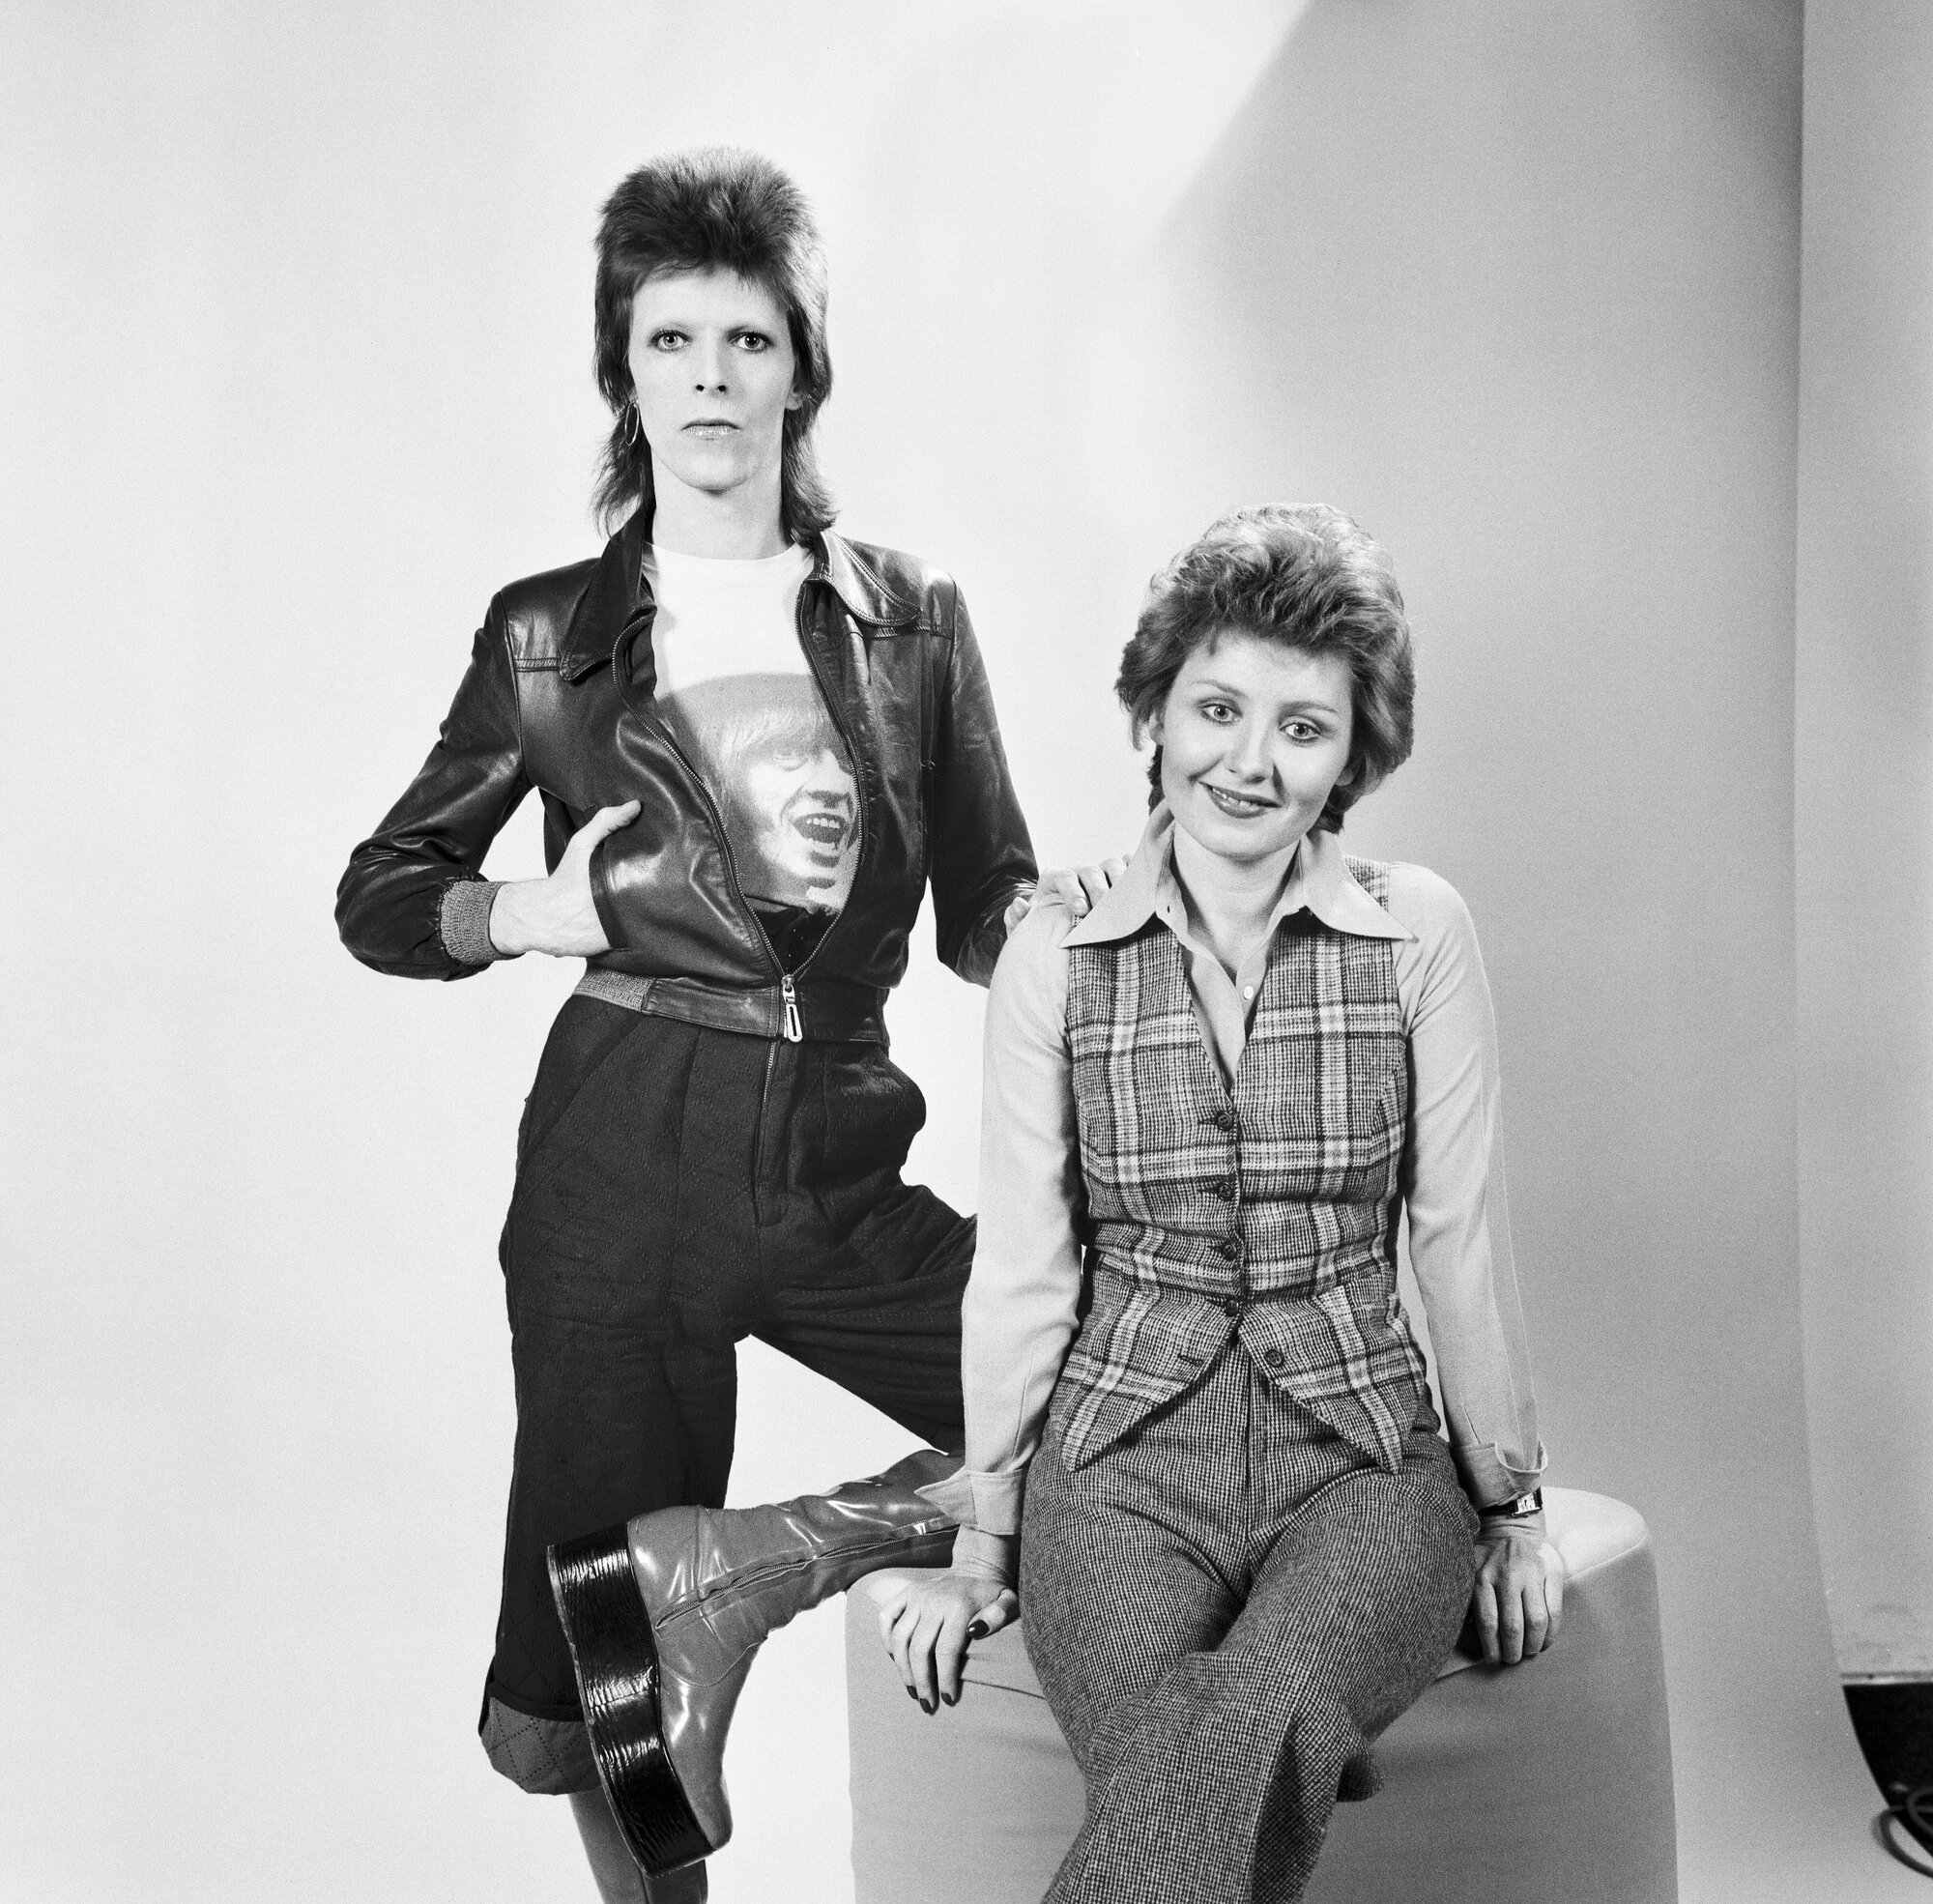 A folyamatosan változó megjelenéséről és hangzásvilágáról ismert David Bowie 1947. január 8-án született David Robert Jones néven a dél-londoni Brixtonban, Angliában. A rocksztár David Bowie első slágere a Space Oddity című dal volt 1969-ben. Az eredeti pop-kaméleon, Bowie a Ziggy Stardust című, áttörést hozó albumán fantasztikus sci-fi karakterré változott. Később Carlos Alomarral és John Lennonnal közösen írta a "Fame" című dalt, amely 1975-ben az első amerikai listavezető kislemez lett. Bowie kitűnő színész volt, 1976-ban szerepelt a The Man Who Fell to Earth című filmben. 1996-ban felvették a Rock and Roll Hall of Fame-be. Nem sokkal utolsó albumának kiadása után, 2016. január 10-én Bowie rákban elhunyt.